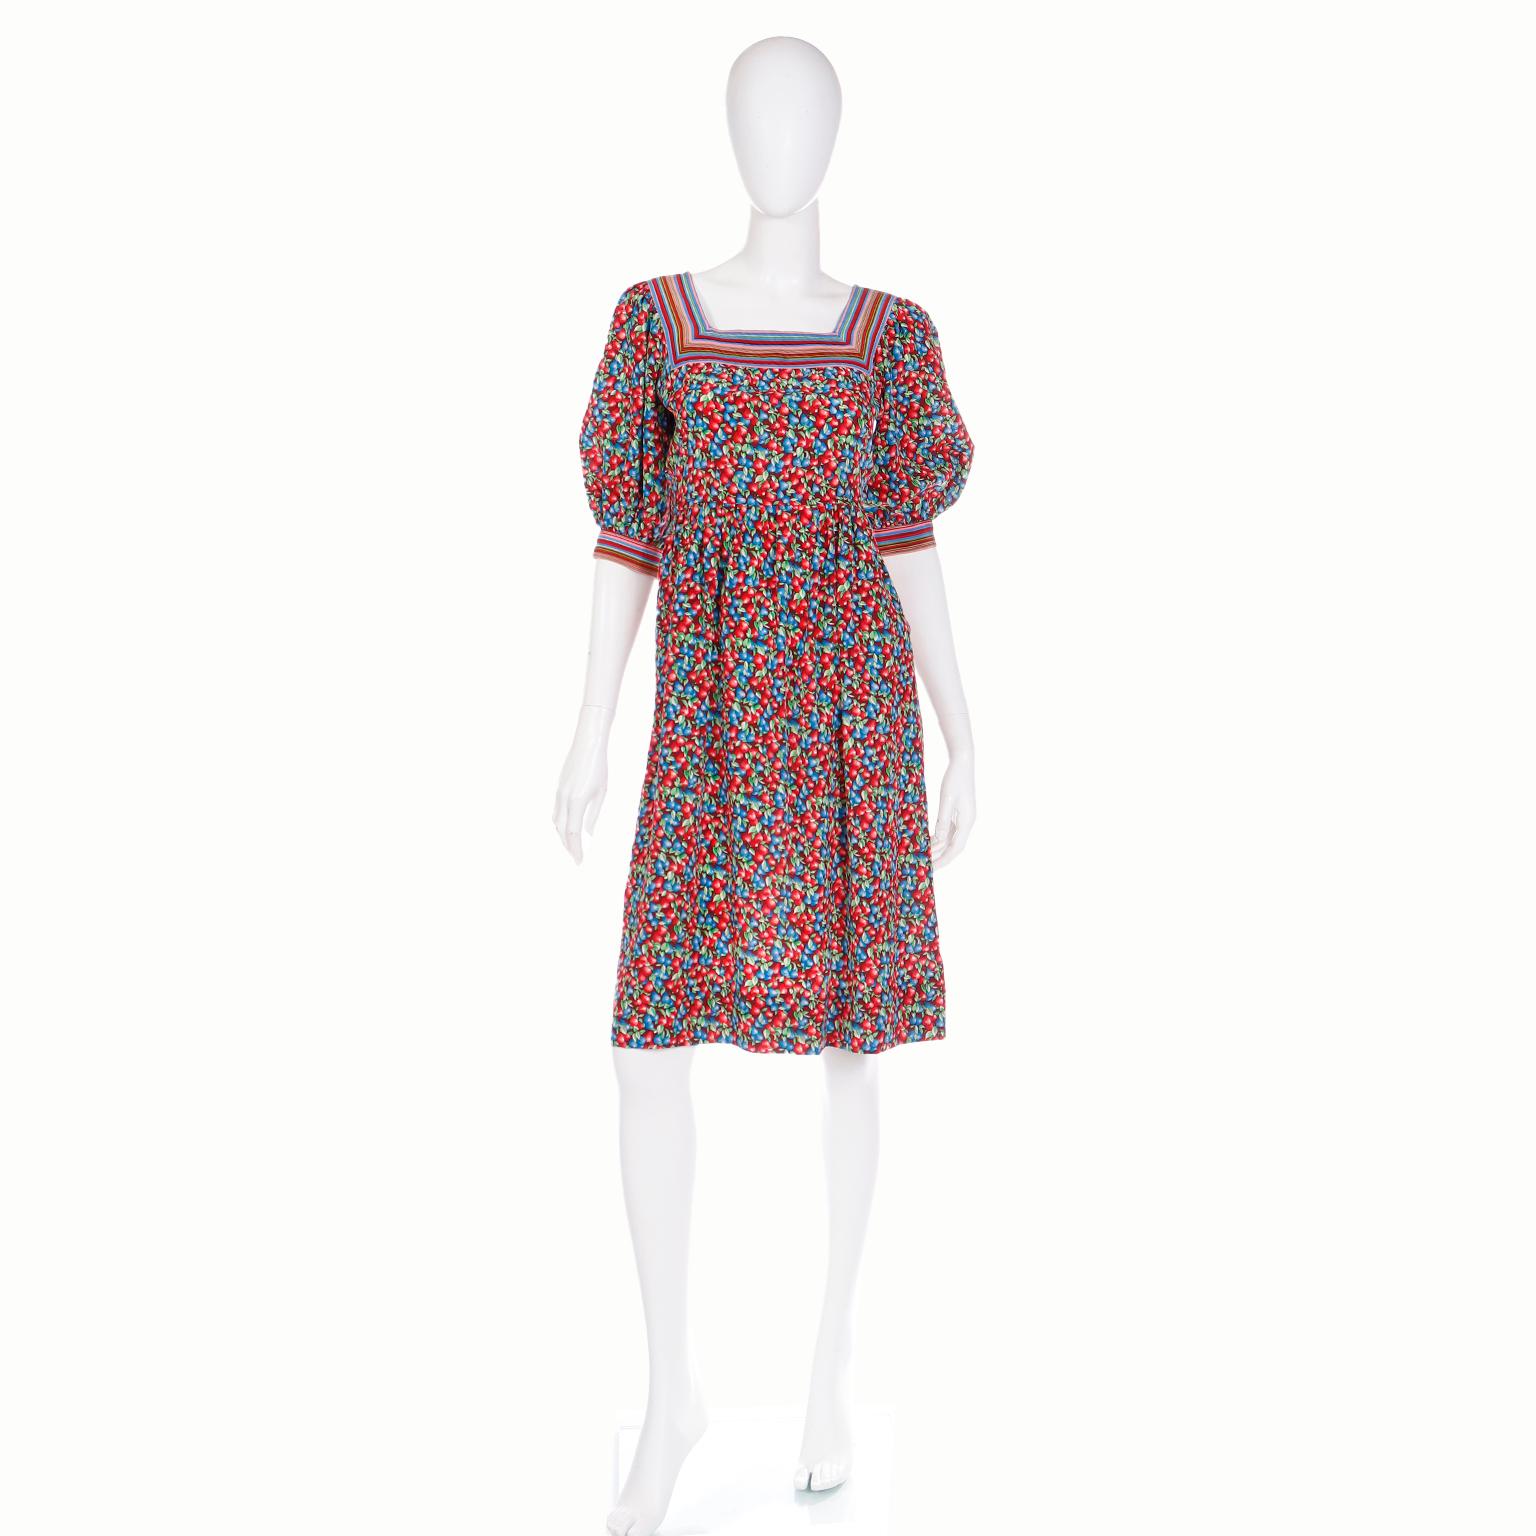 Die Vintage-Kleider von Emanuel Ungaro sind bekannt für ihre schönen Drucke und luxuriösen Stoffe. Diese Vintage späten 1970er oder frühen 1980er Jahren Seide Kleid ist in einem roten und blauen Beeren Obst Druck in Schattierungen von Blau, Rot,